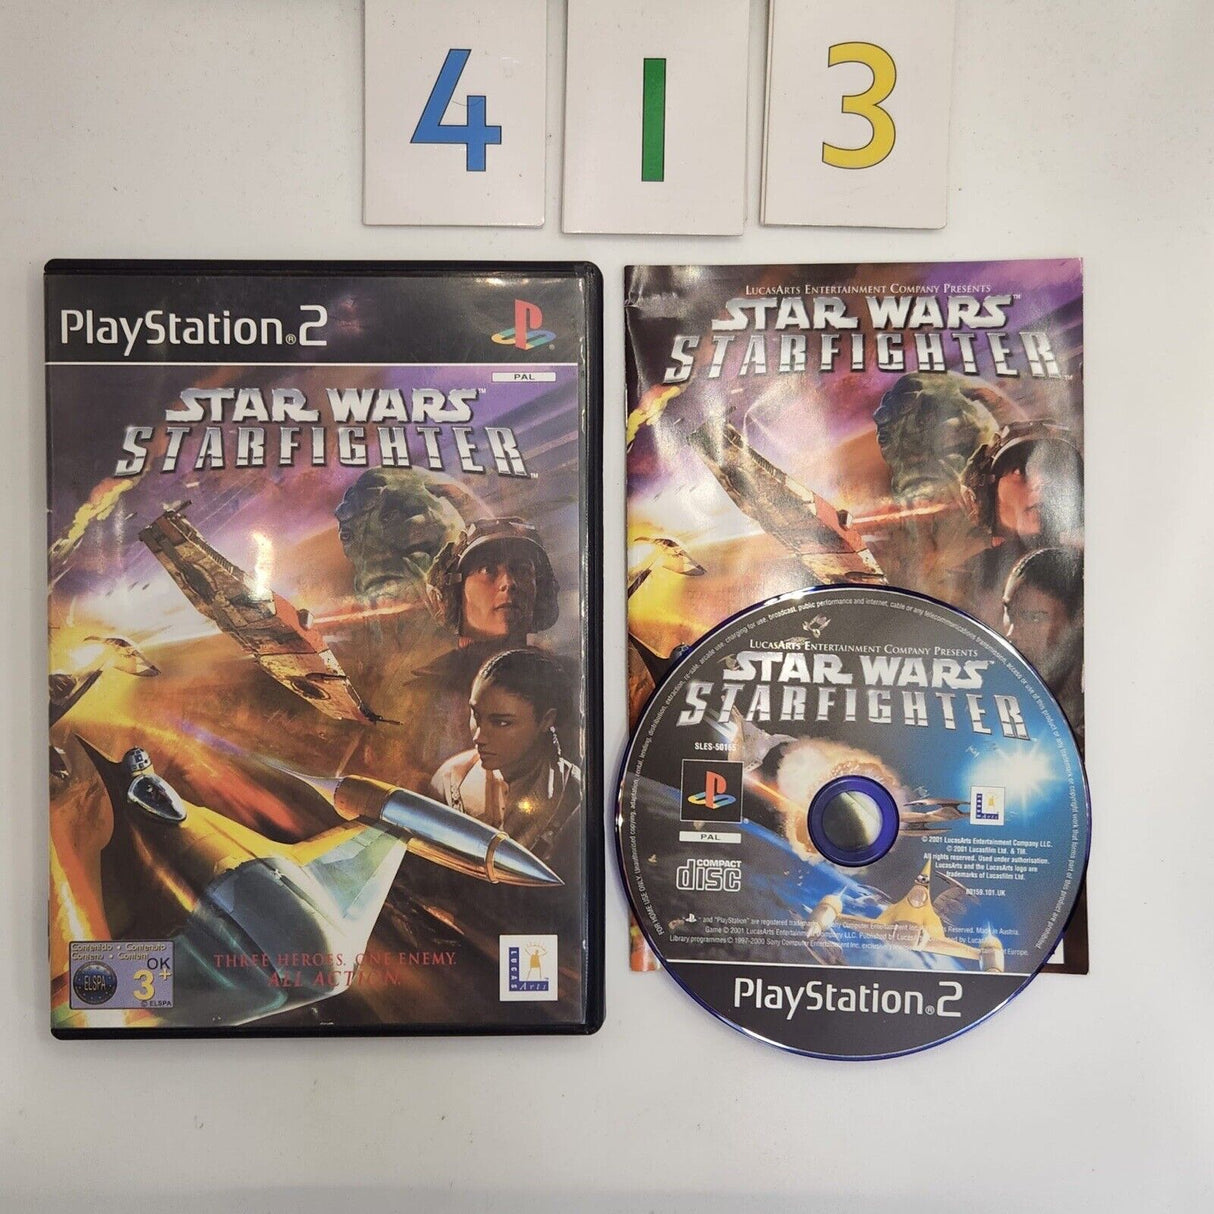 Star Wars Starfighter PS2 Playstation 2 Game + Manual PAL